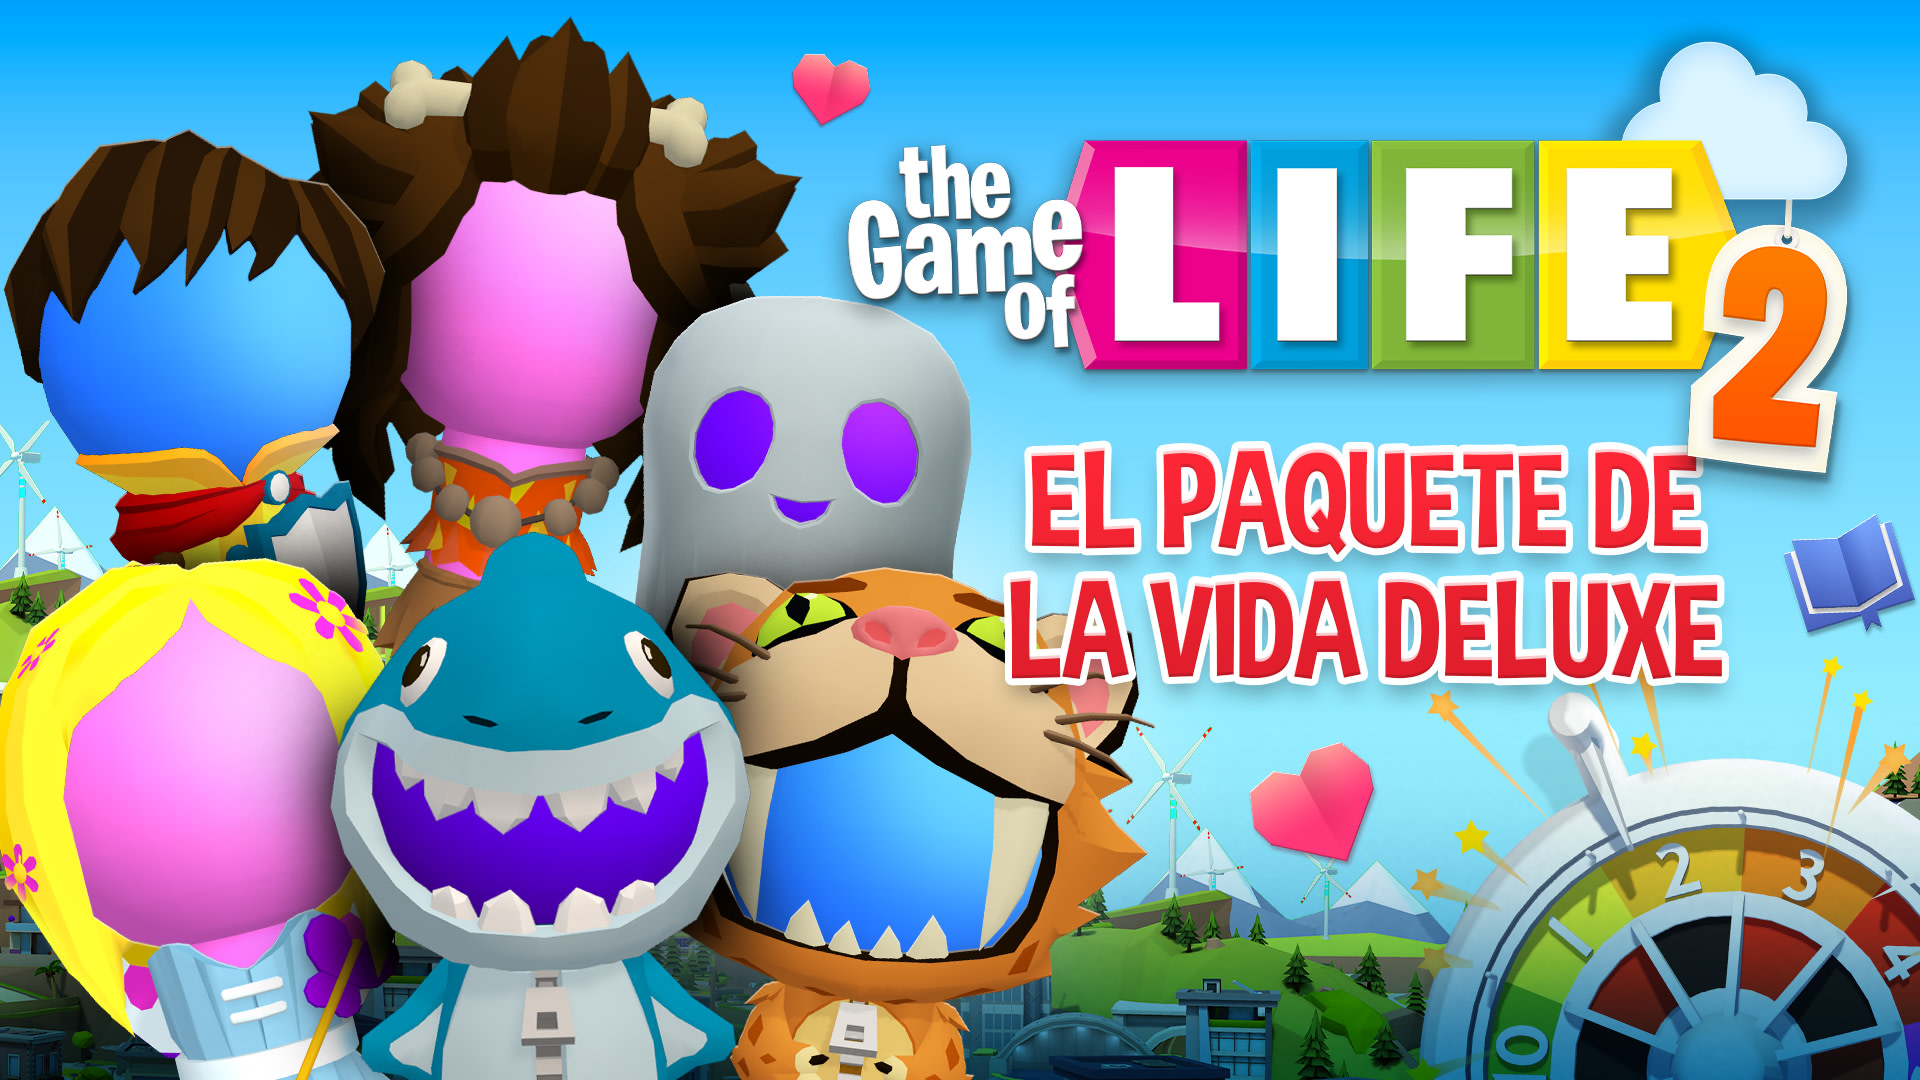 THE GAME OF LIFE 2 - El Paquete de la Vida Deluxe